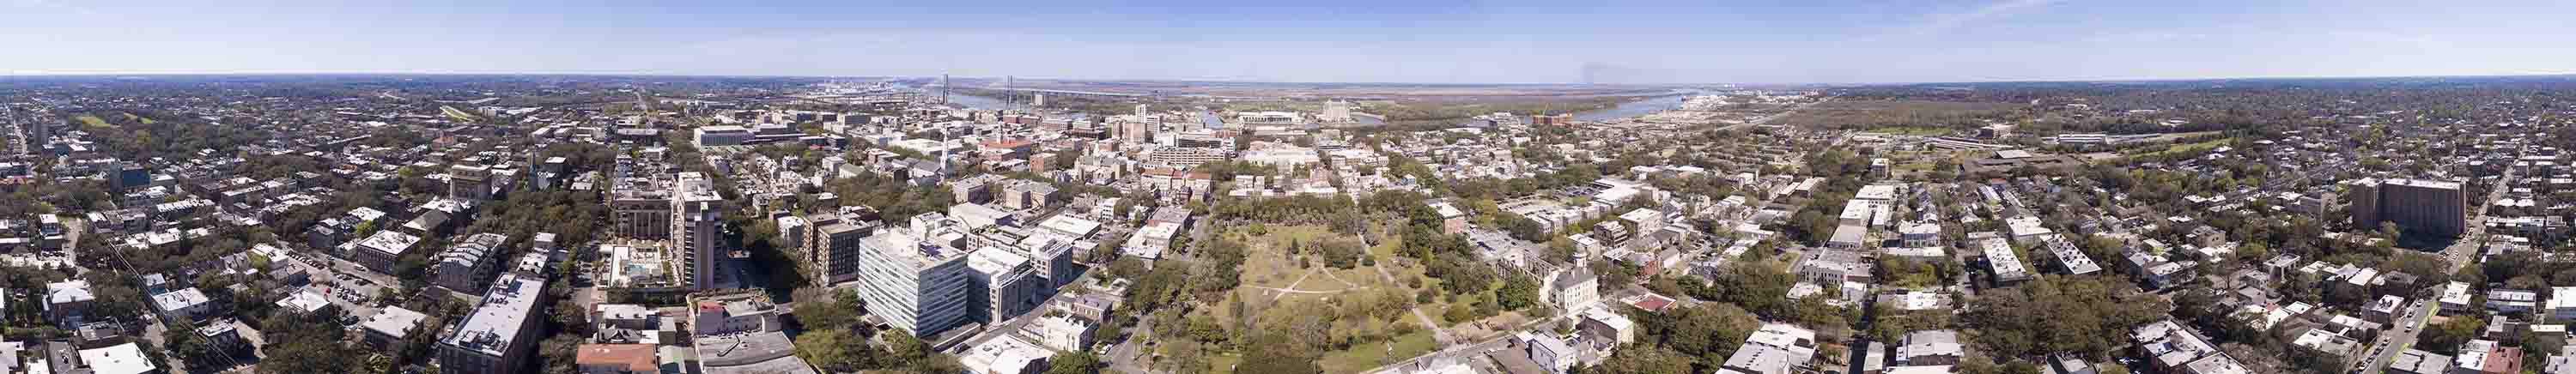 Aerial 360 degree seamless panorama of downtown Savannah, Georgi